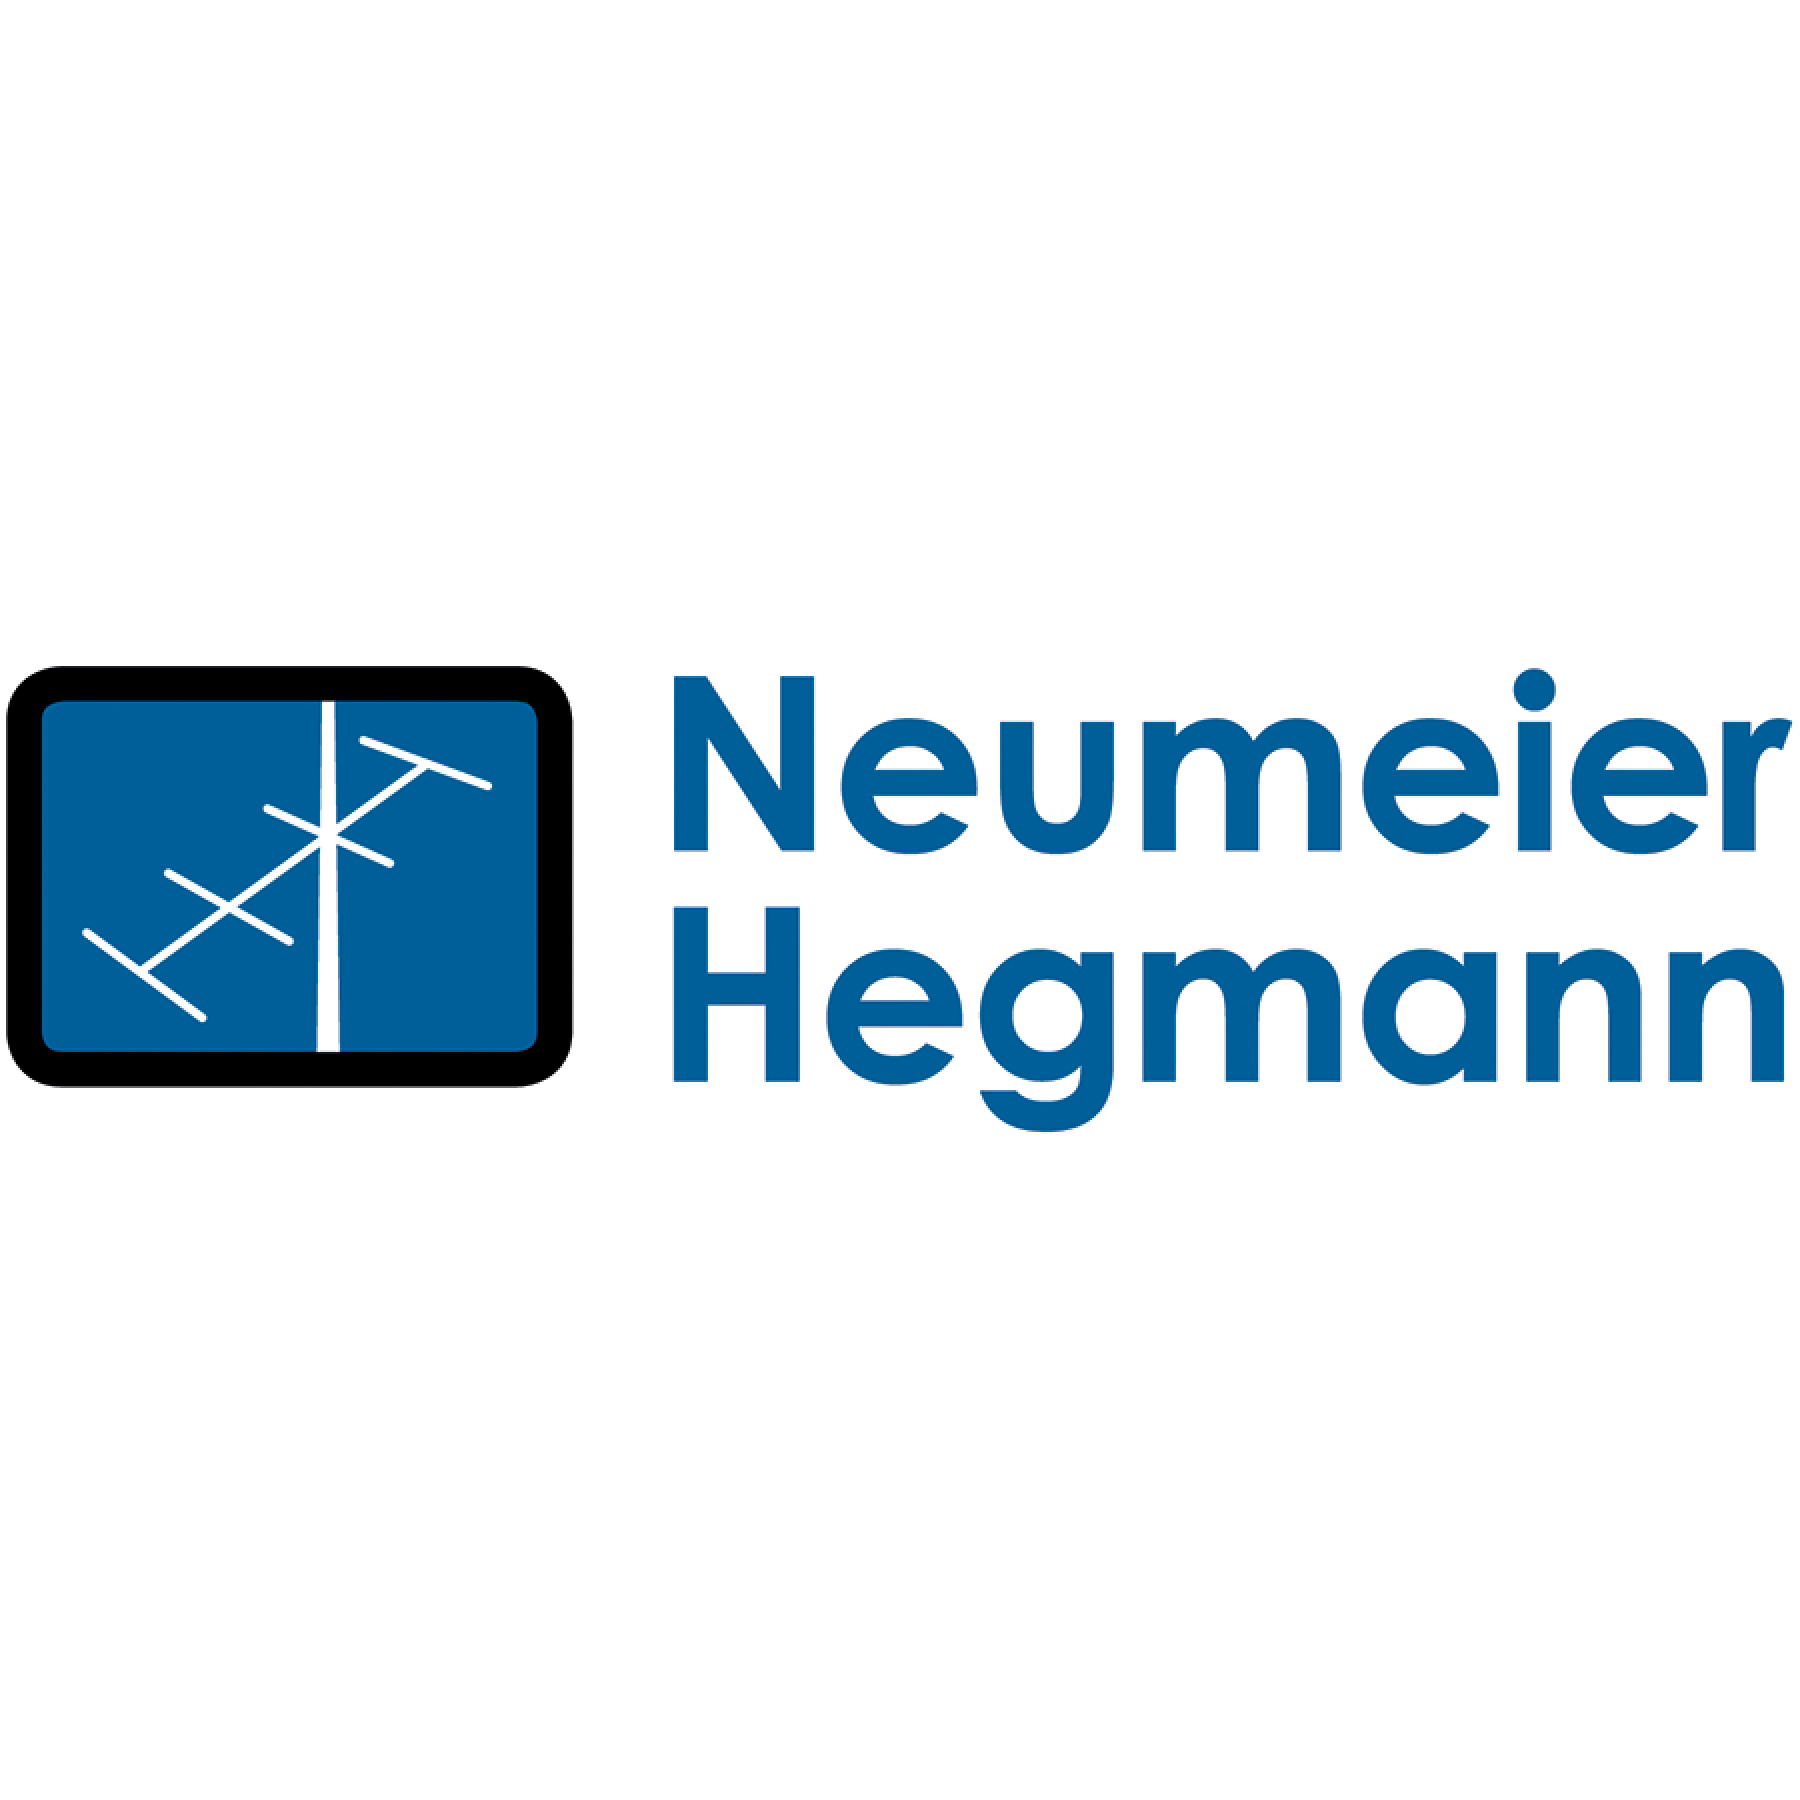 Neumeier, Hegmann & Co. Fernsehdienst - Antennenbau GmbH  